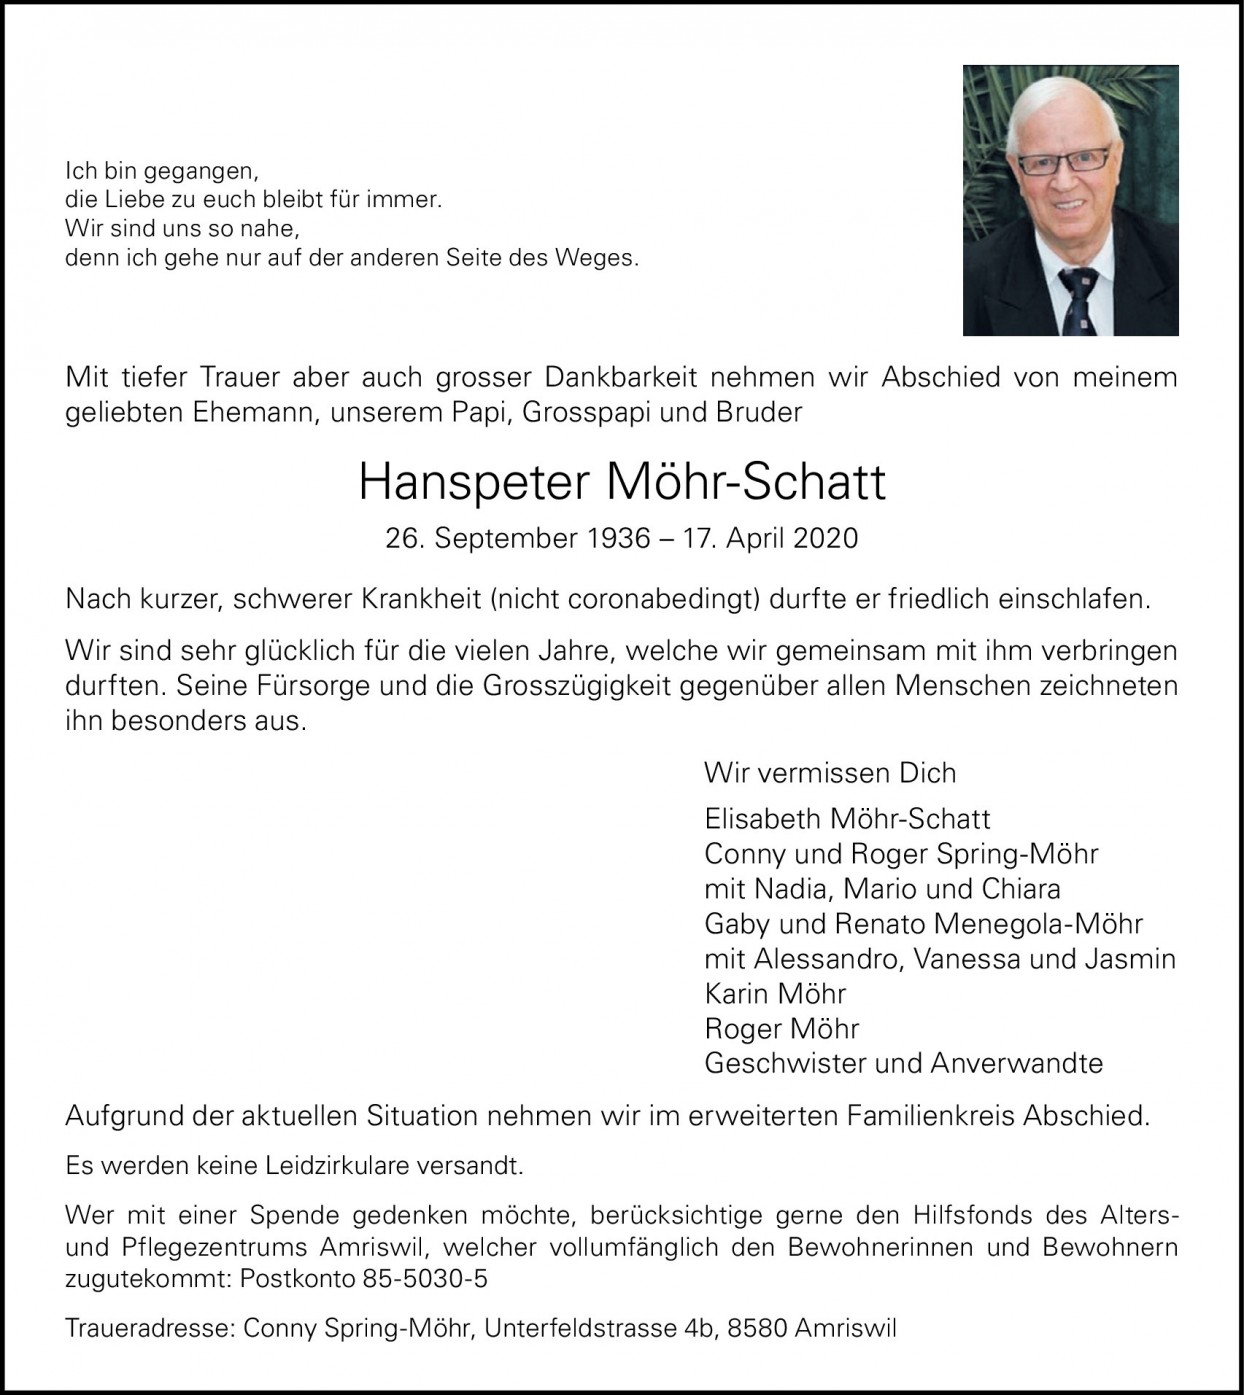 Hanspeter Möhr-Schatt